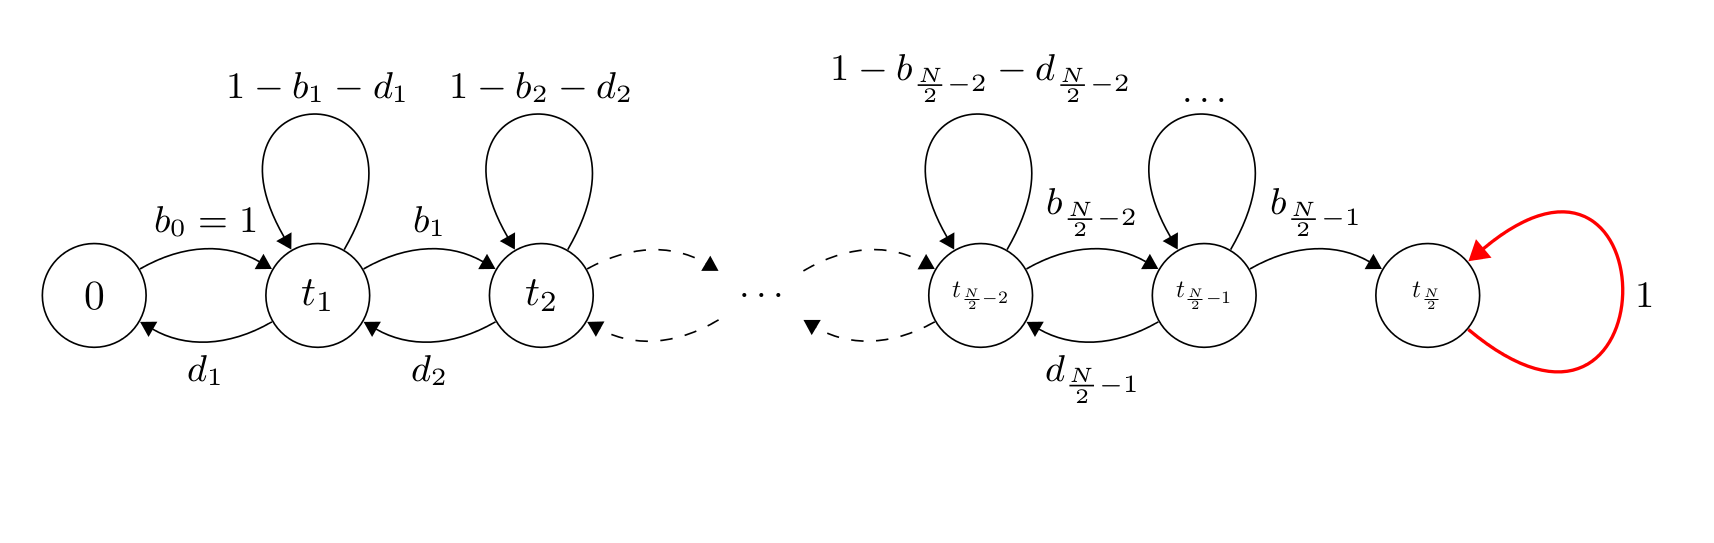 Łańcuch Markova absorbujący przy (\frac{N}{2}).